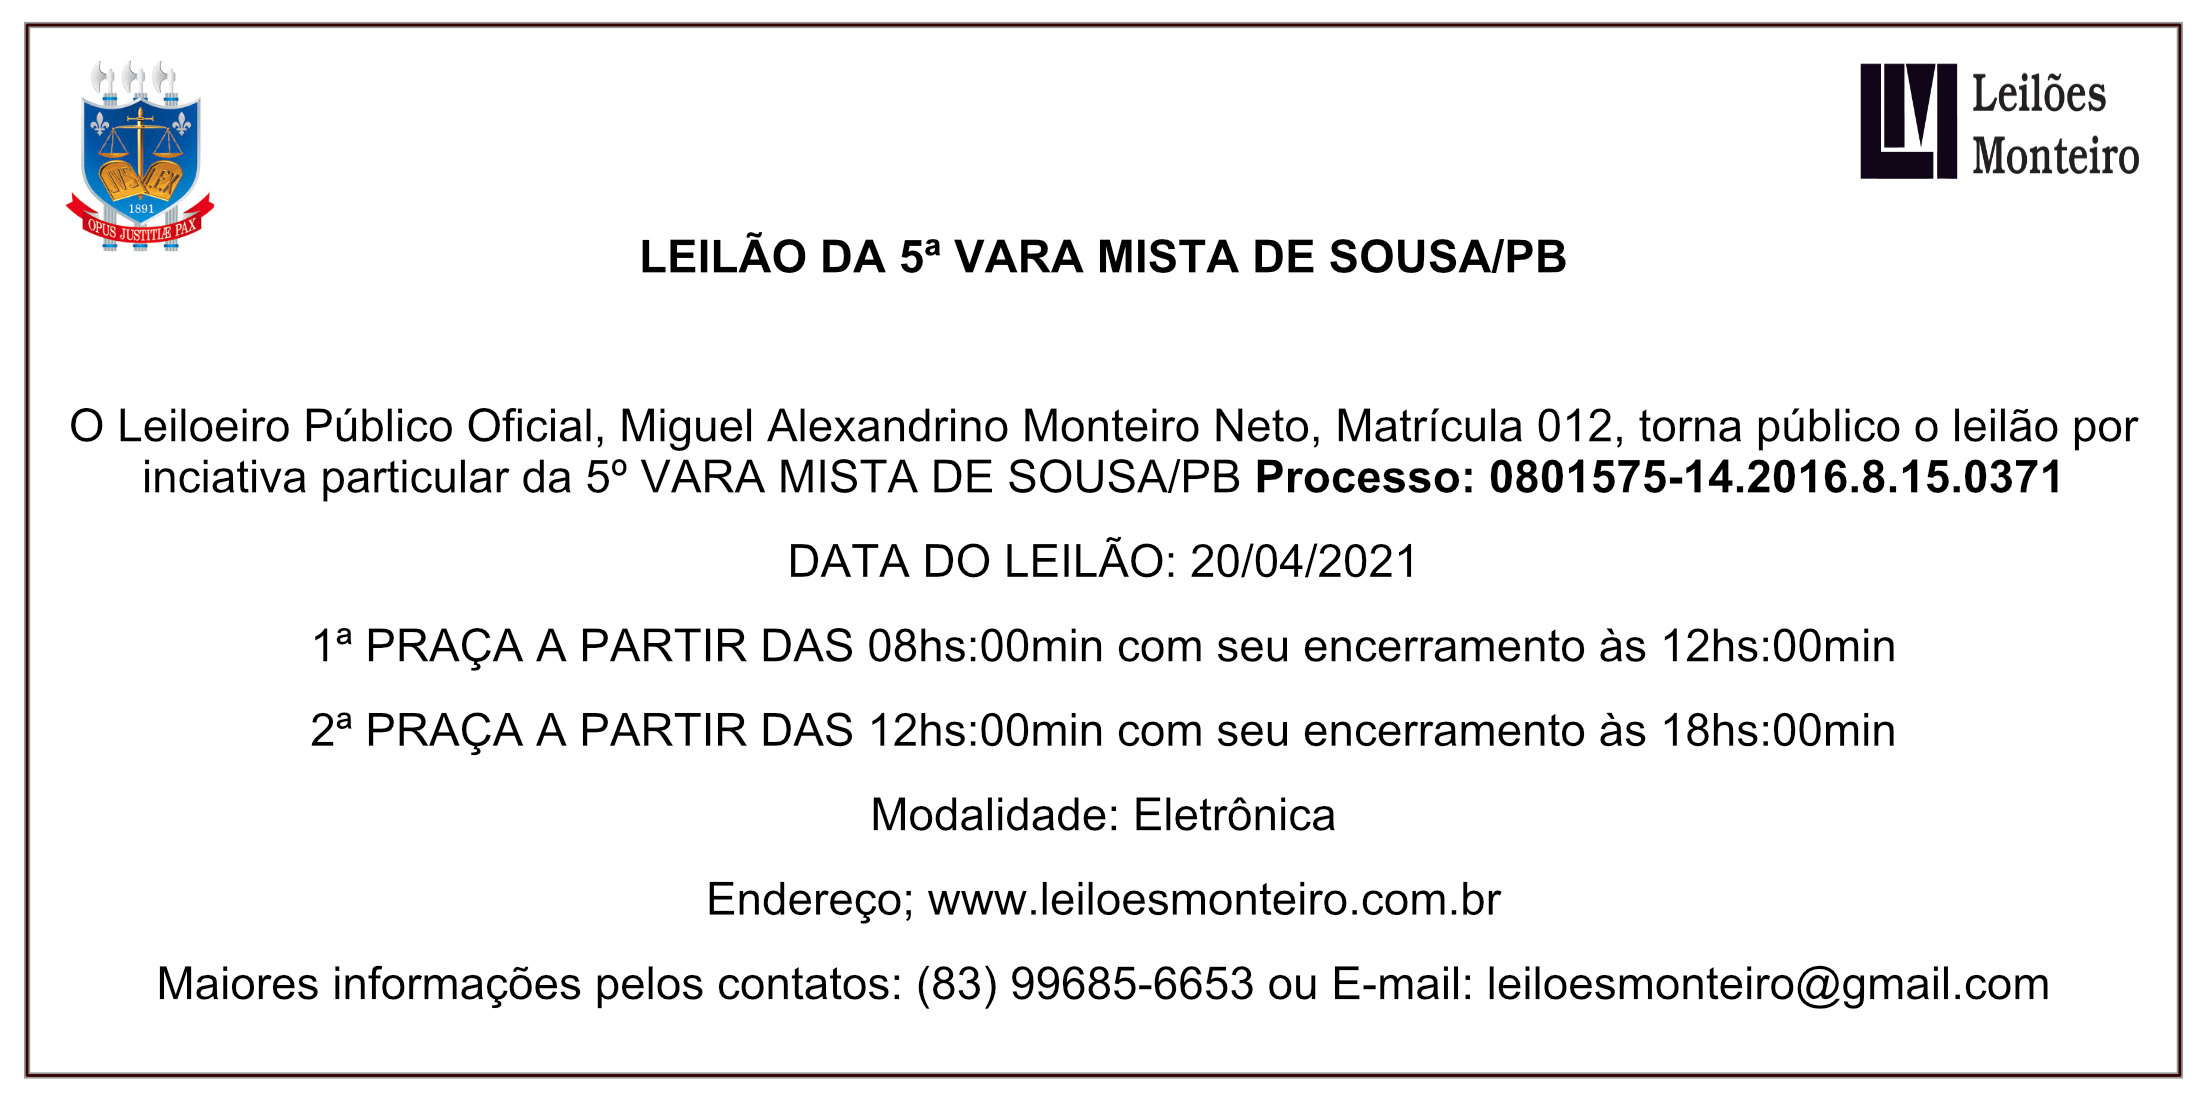 Leilões Monteiro – LEILÃO DA 5ª VARA MISTA DE SOUSA/PB